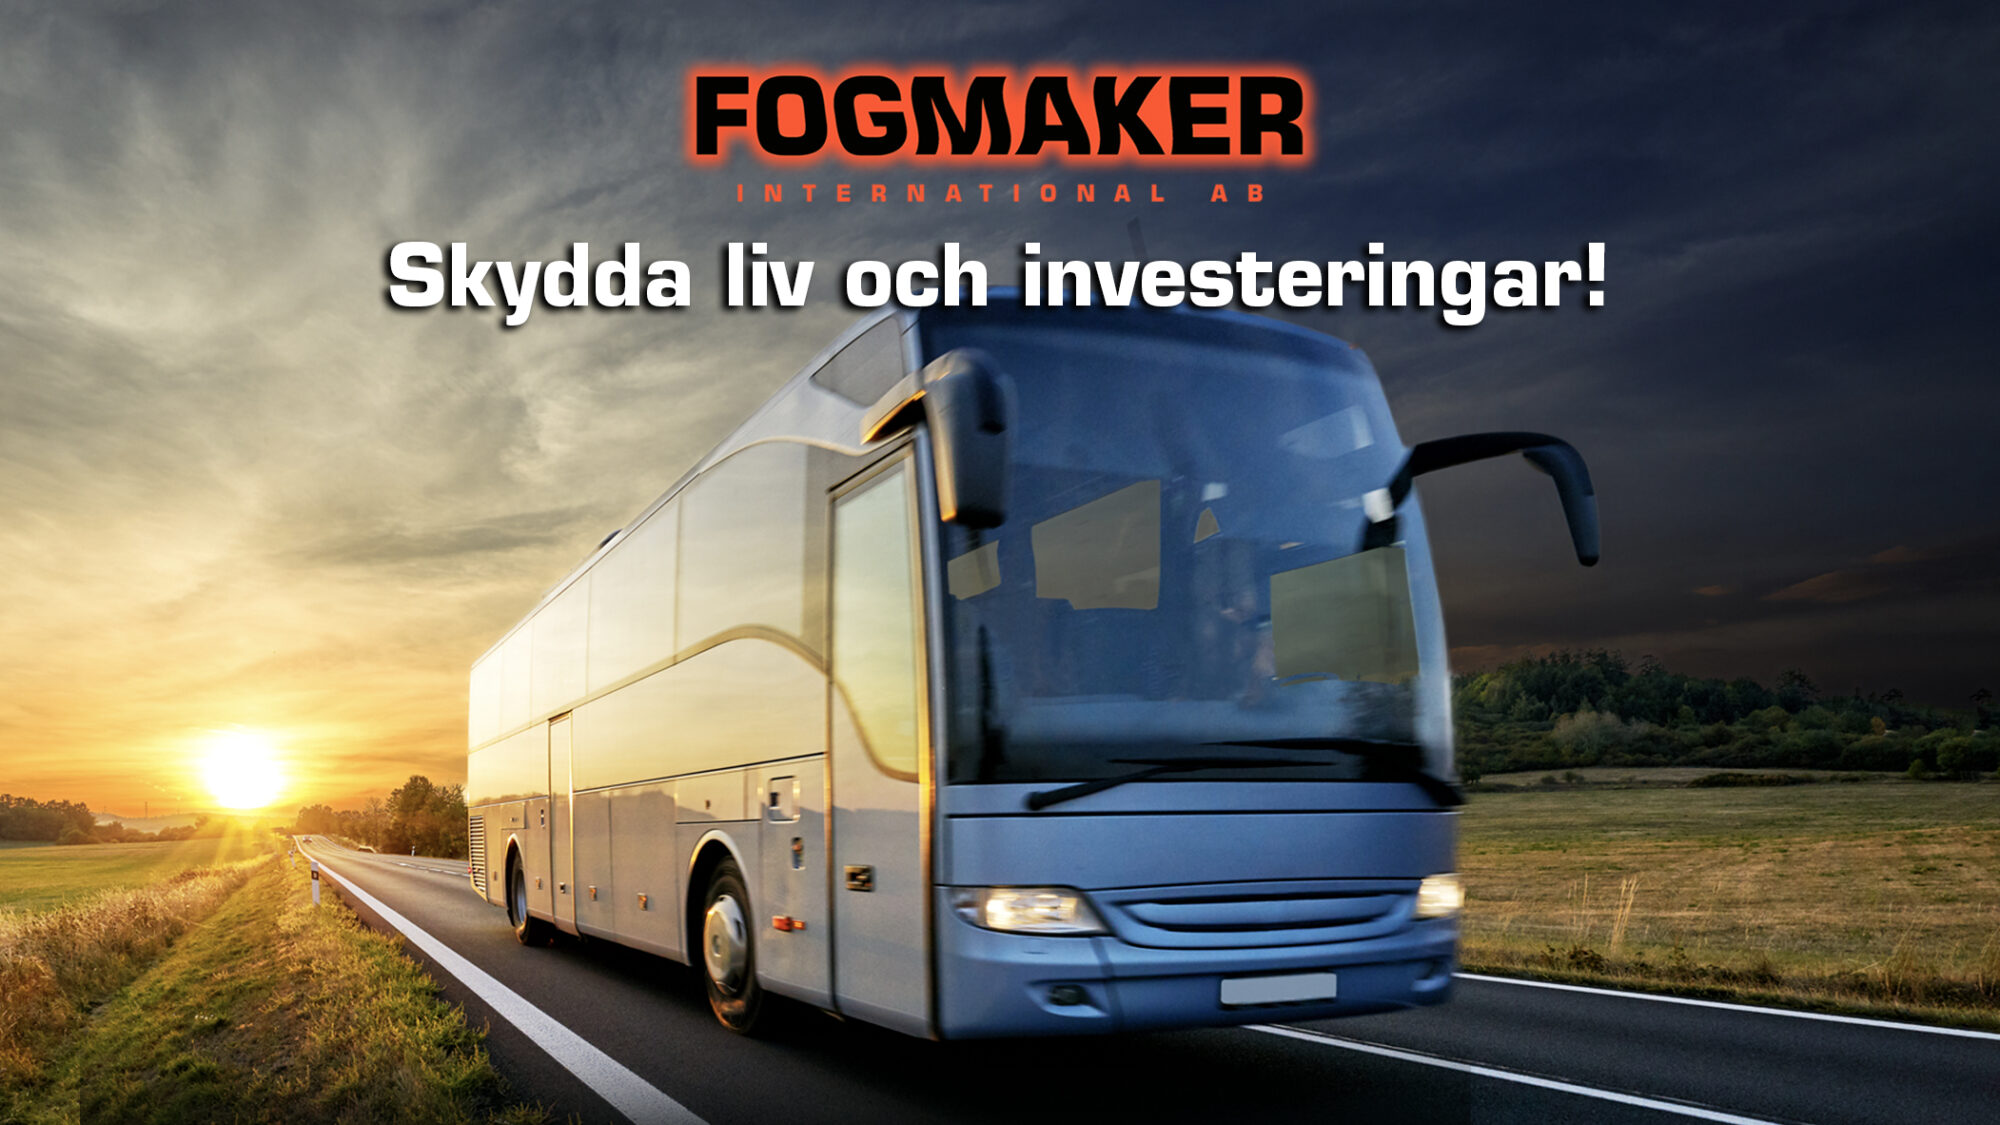 Träffa Fogmaker på Busworld